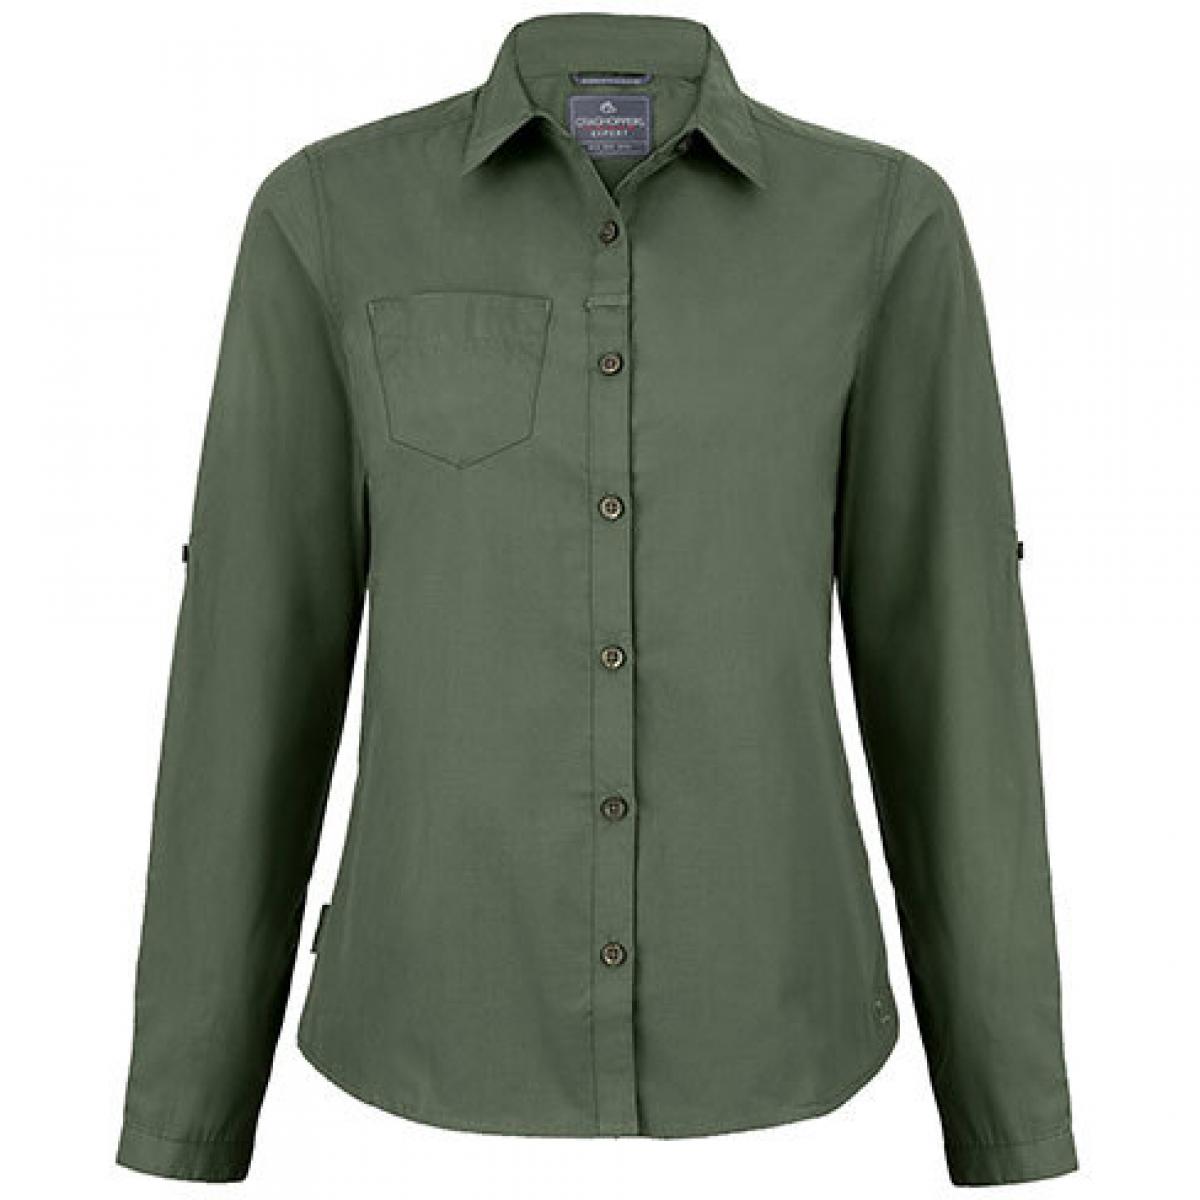 Hersteller: Craghoppers Expert Herstellernummer: CES002 Artikelbezeichnung: Expert Womens Kiwi Long Sleeved Shirt Farbe: Dark Cedar Green